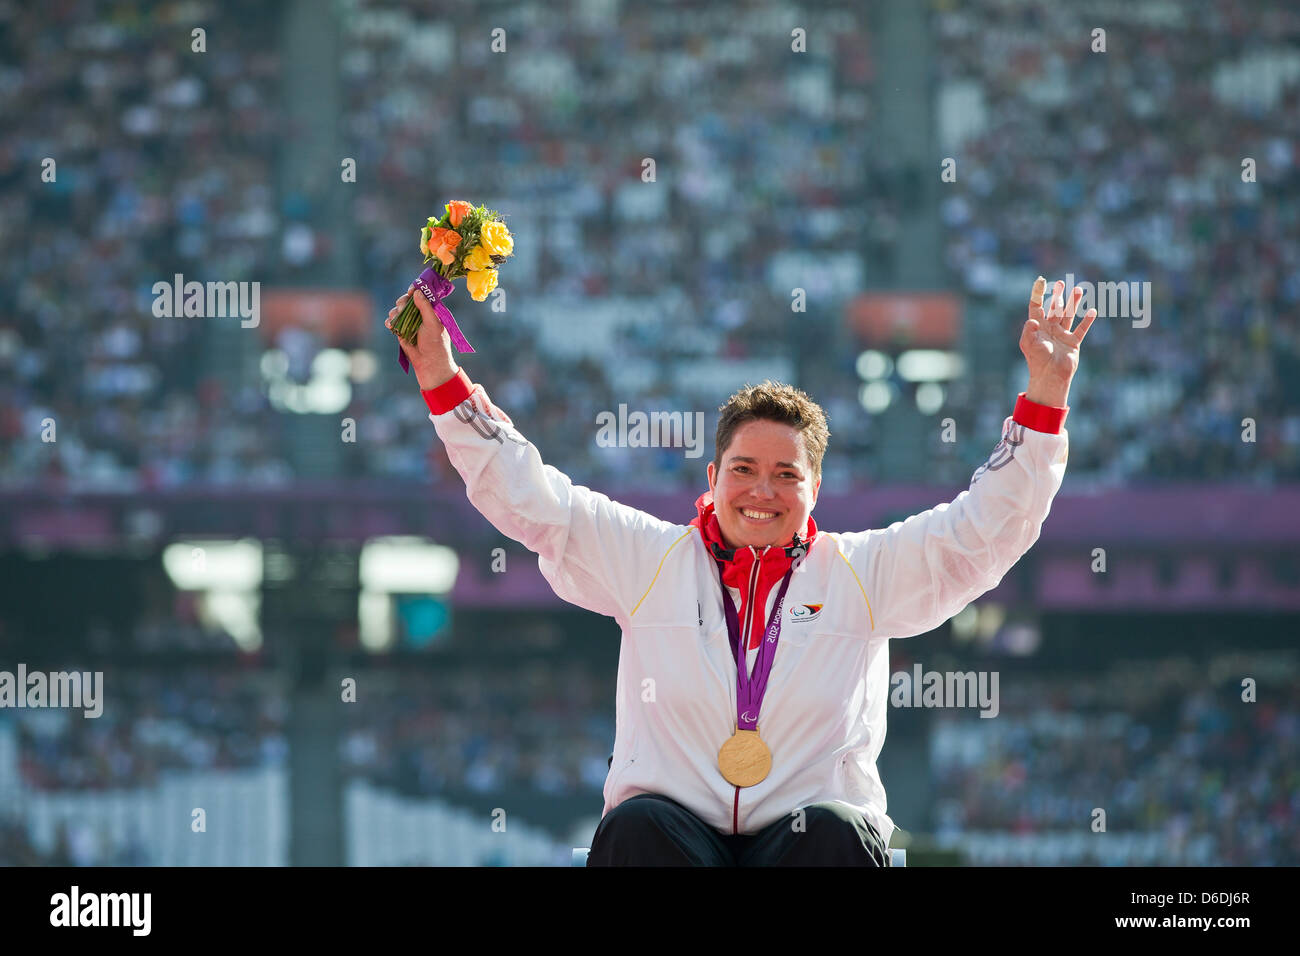 Goldmedaillengewinner Birgit Kober Deutschlands feiert nach der Siegerehrung für die Frauen Kugelstoß - Finale F32/33/34 während der London 2012 Paralympischen Spiele Leichtathletik-Wettbewerb im Olympiastadion, Großbritannien, 7. September 2012. Foto: Daniel Karmann Dpa +++(c) Dpa - Bildfunk +++ Stockfoto